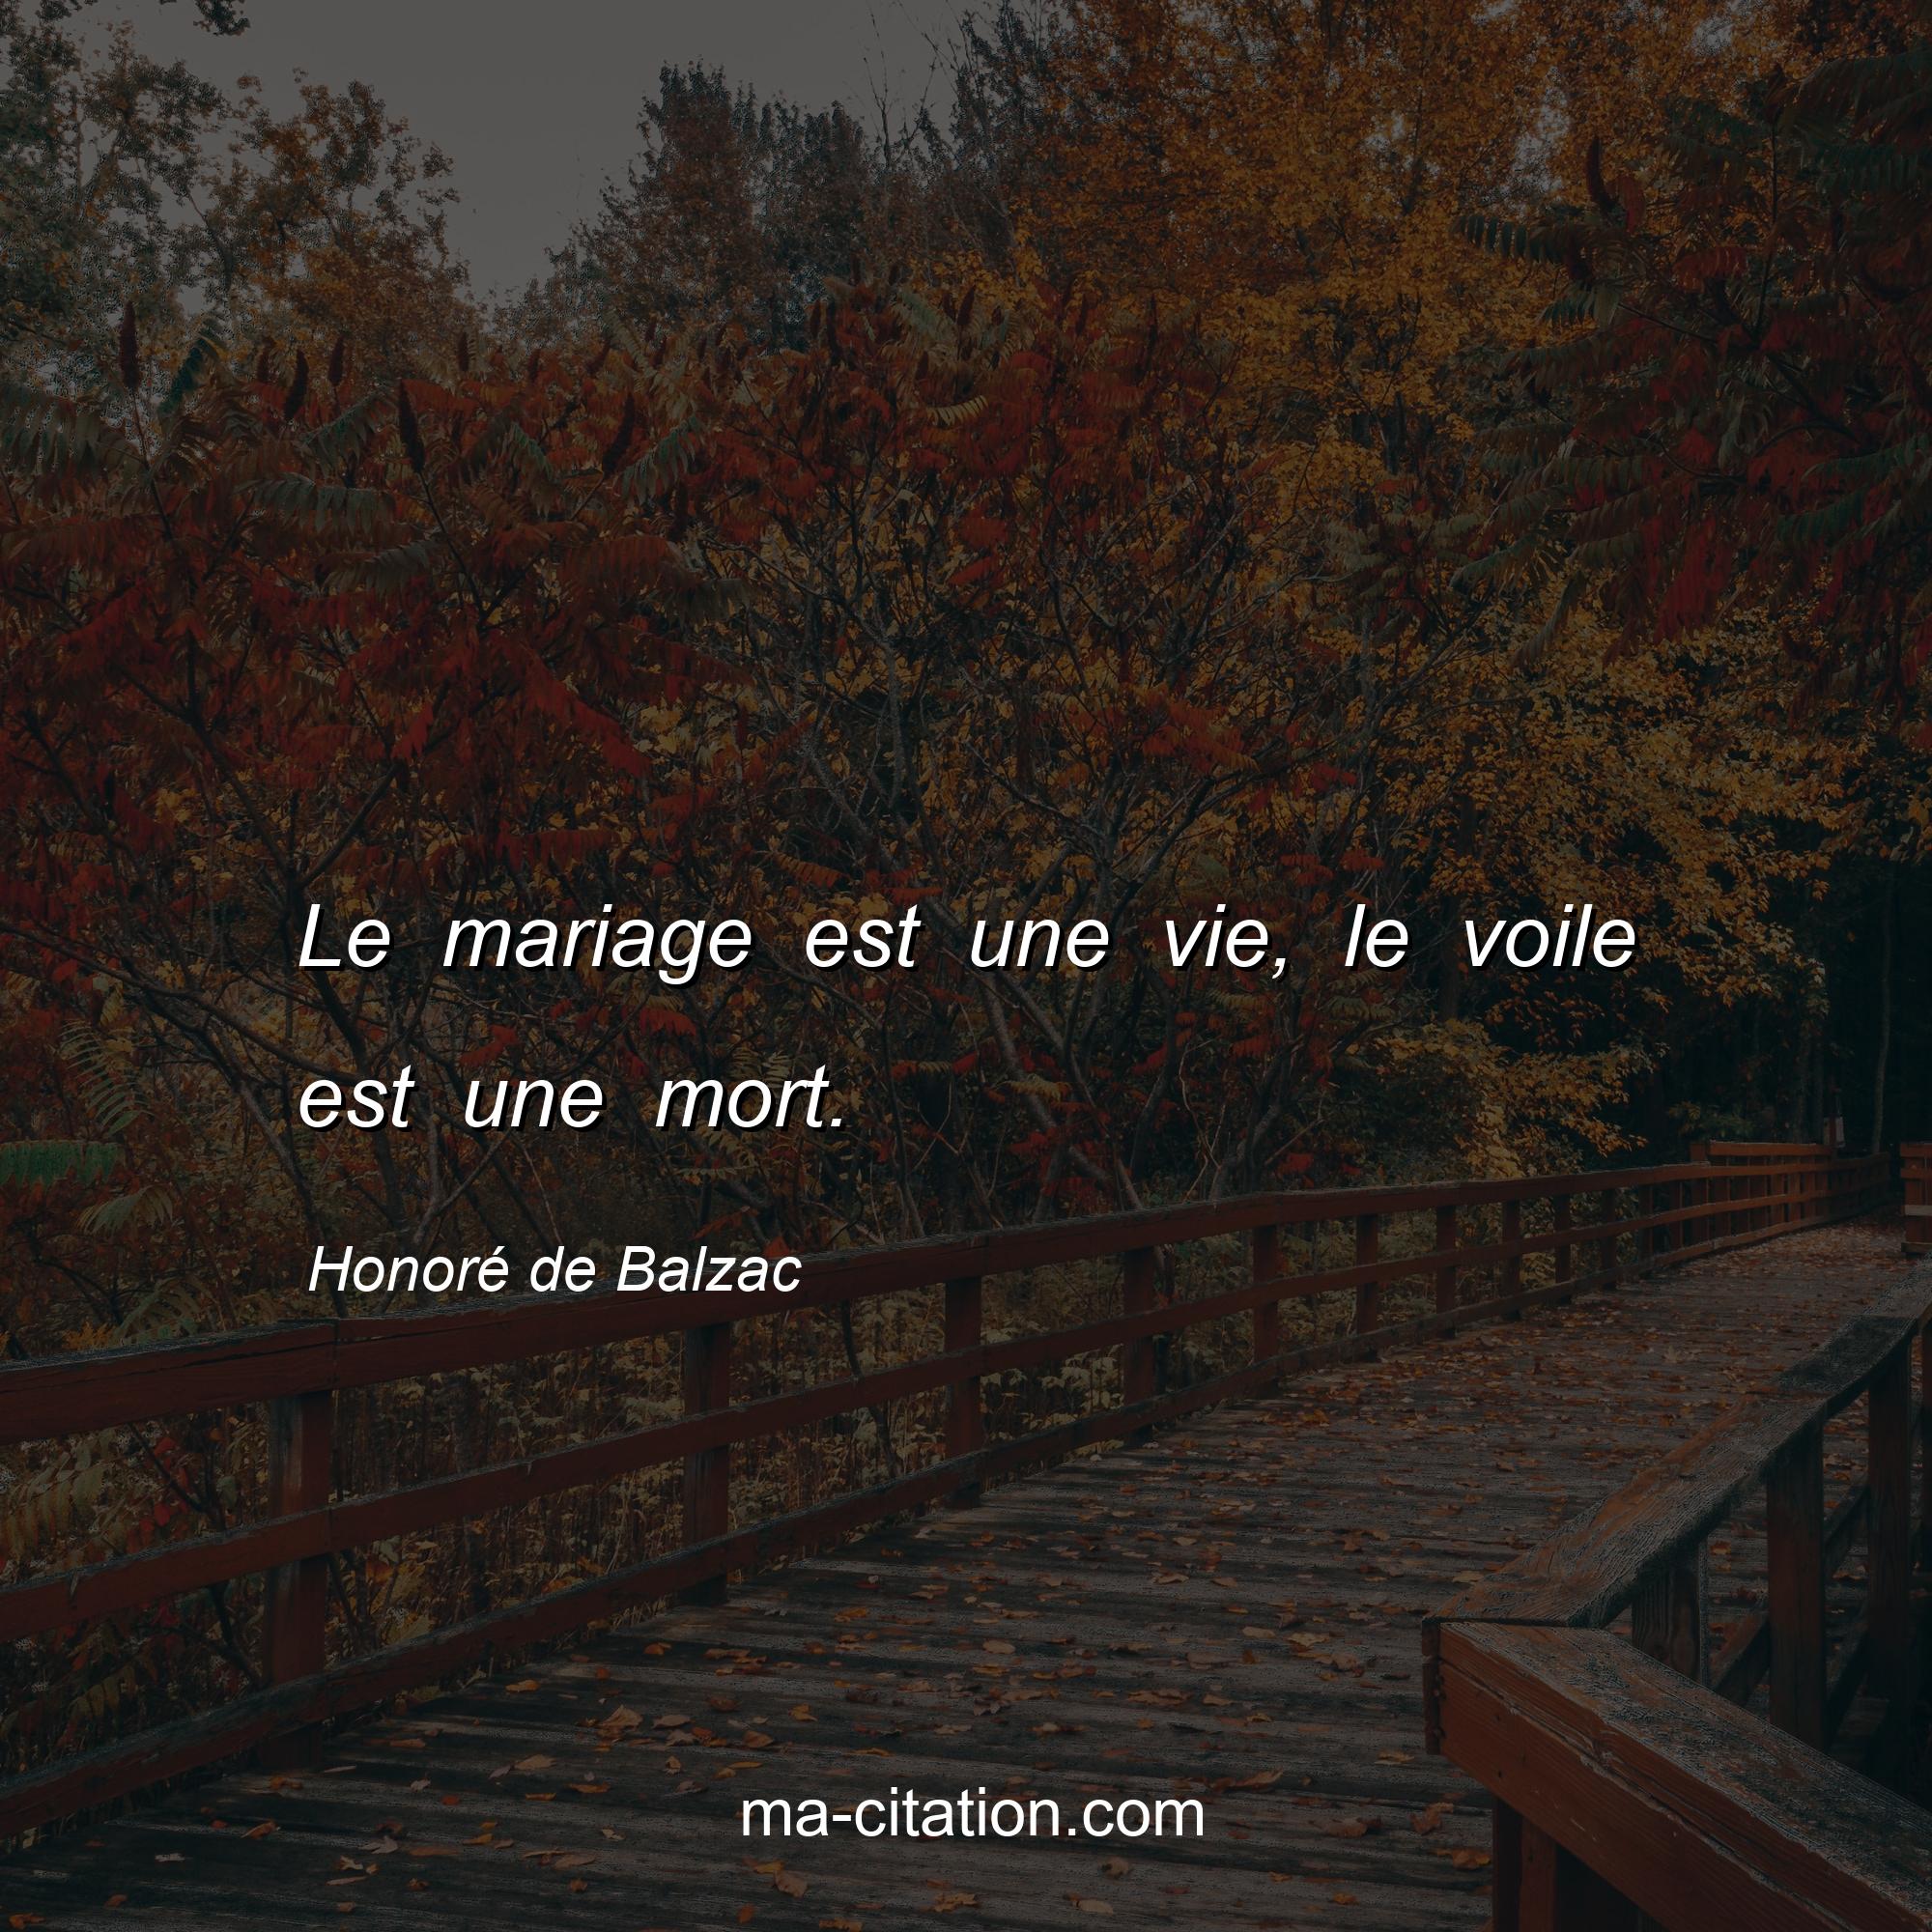 Honoré de Balzac : Le mariage est une vie, le voile est une mort.